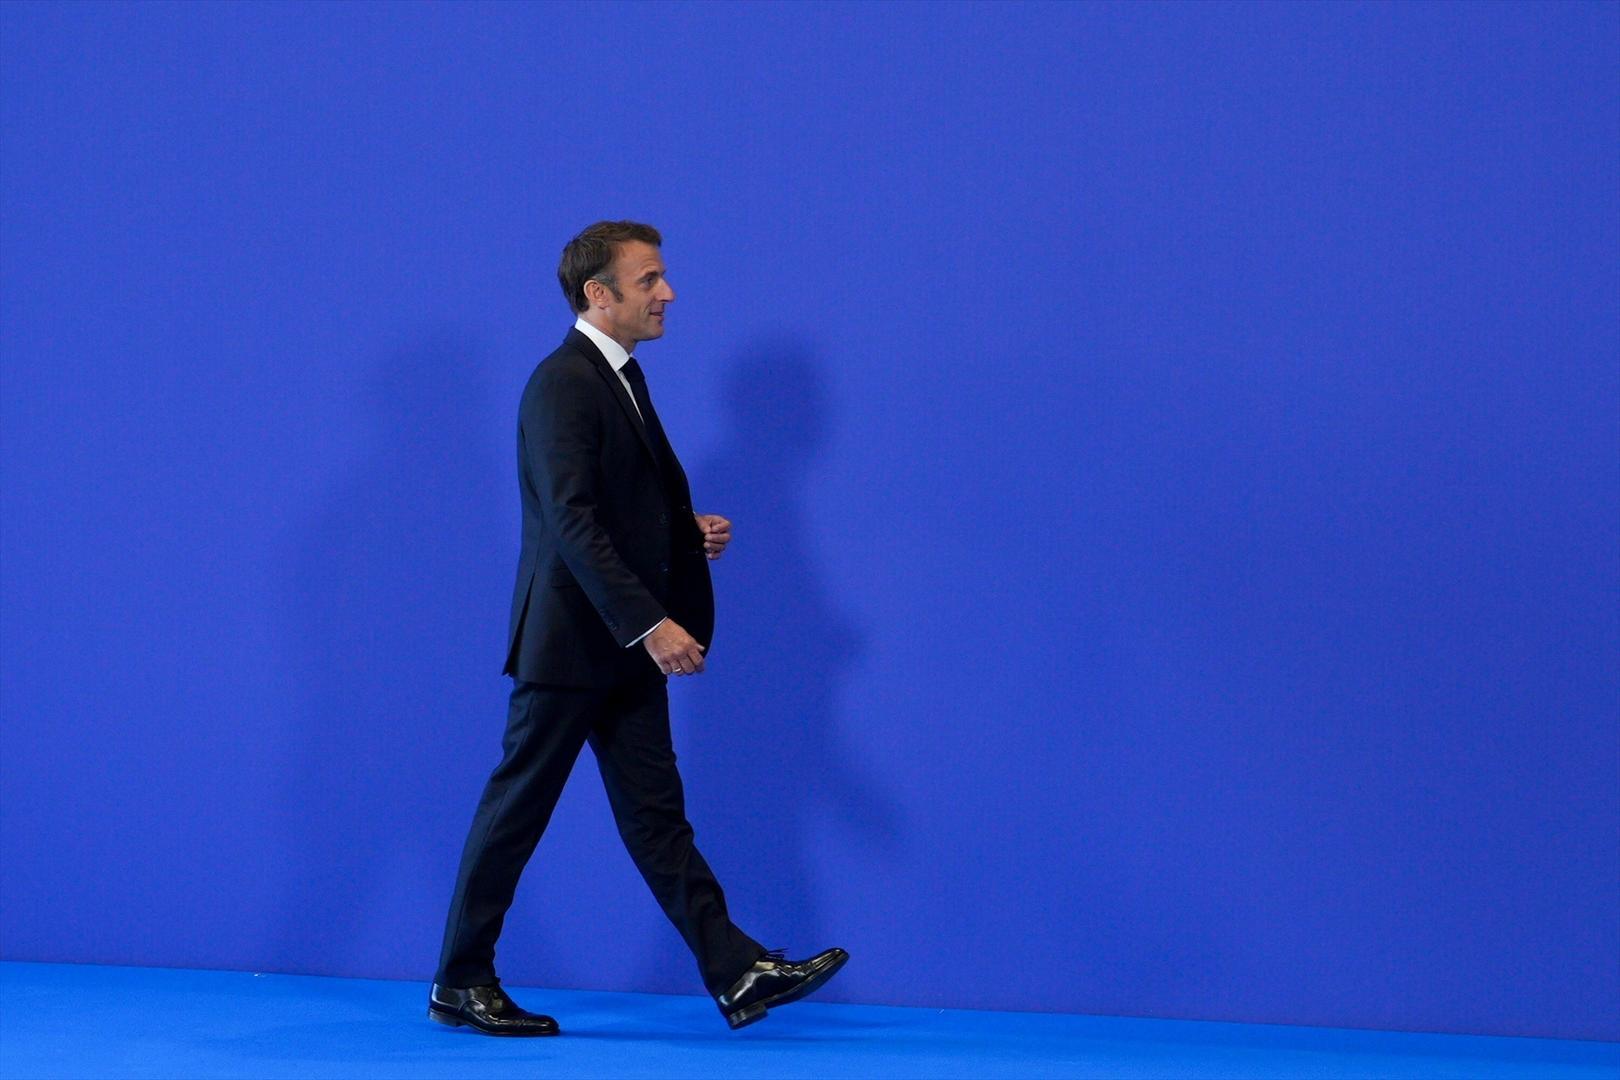 Macron continúa su retórica de guerra en la precampaña electoral europea